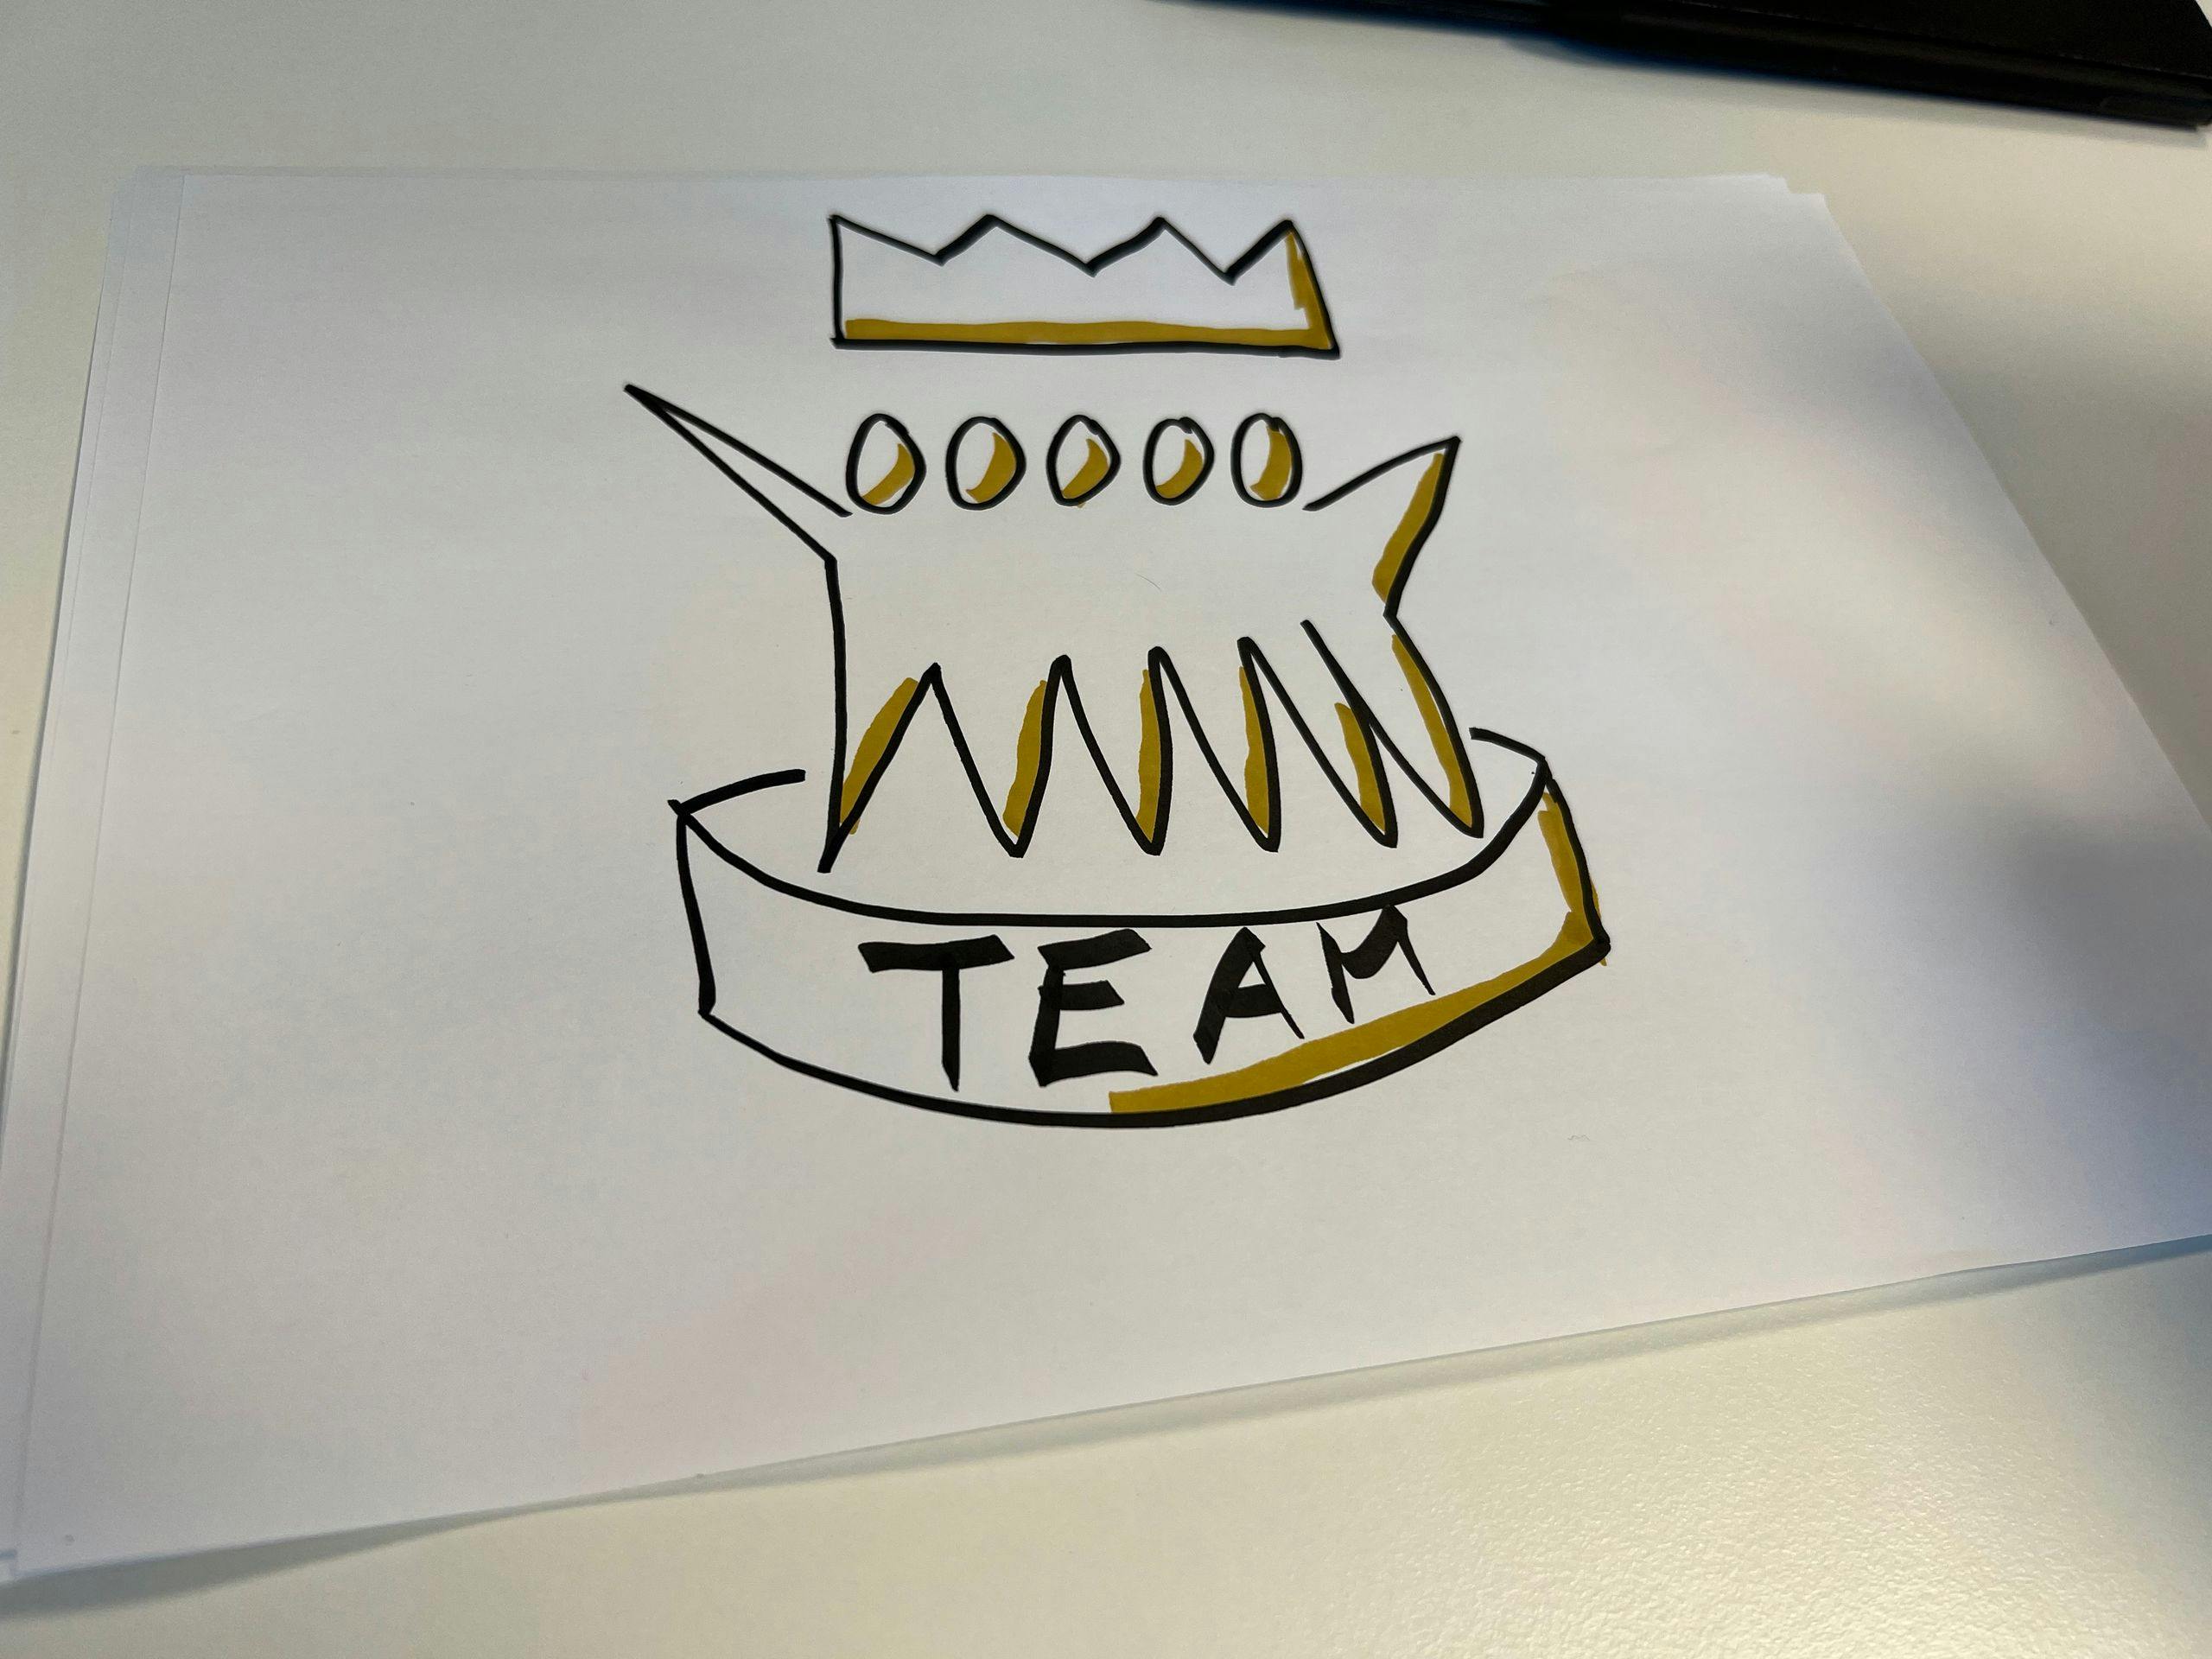 En tegning av et team med en krone over.